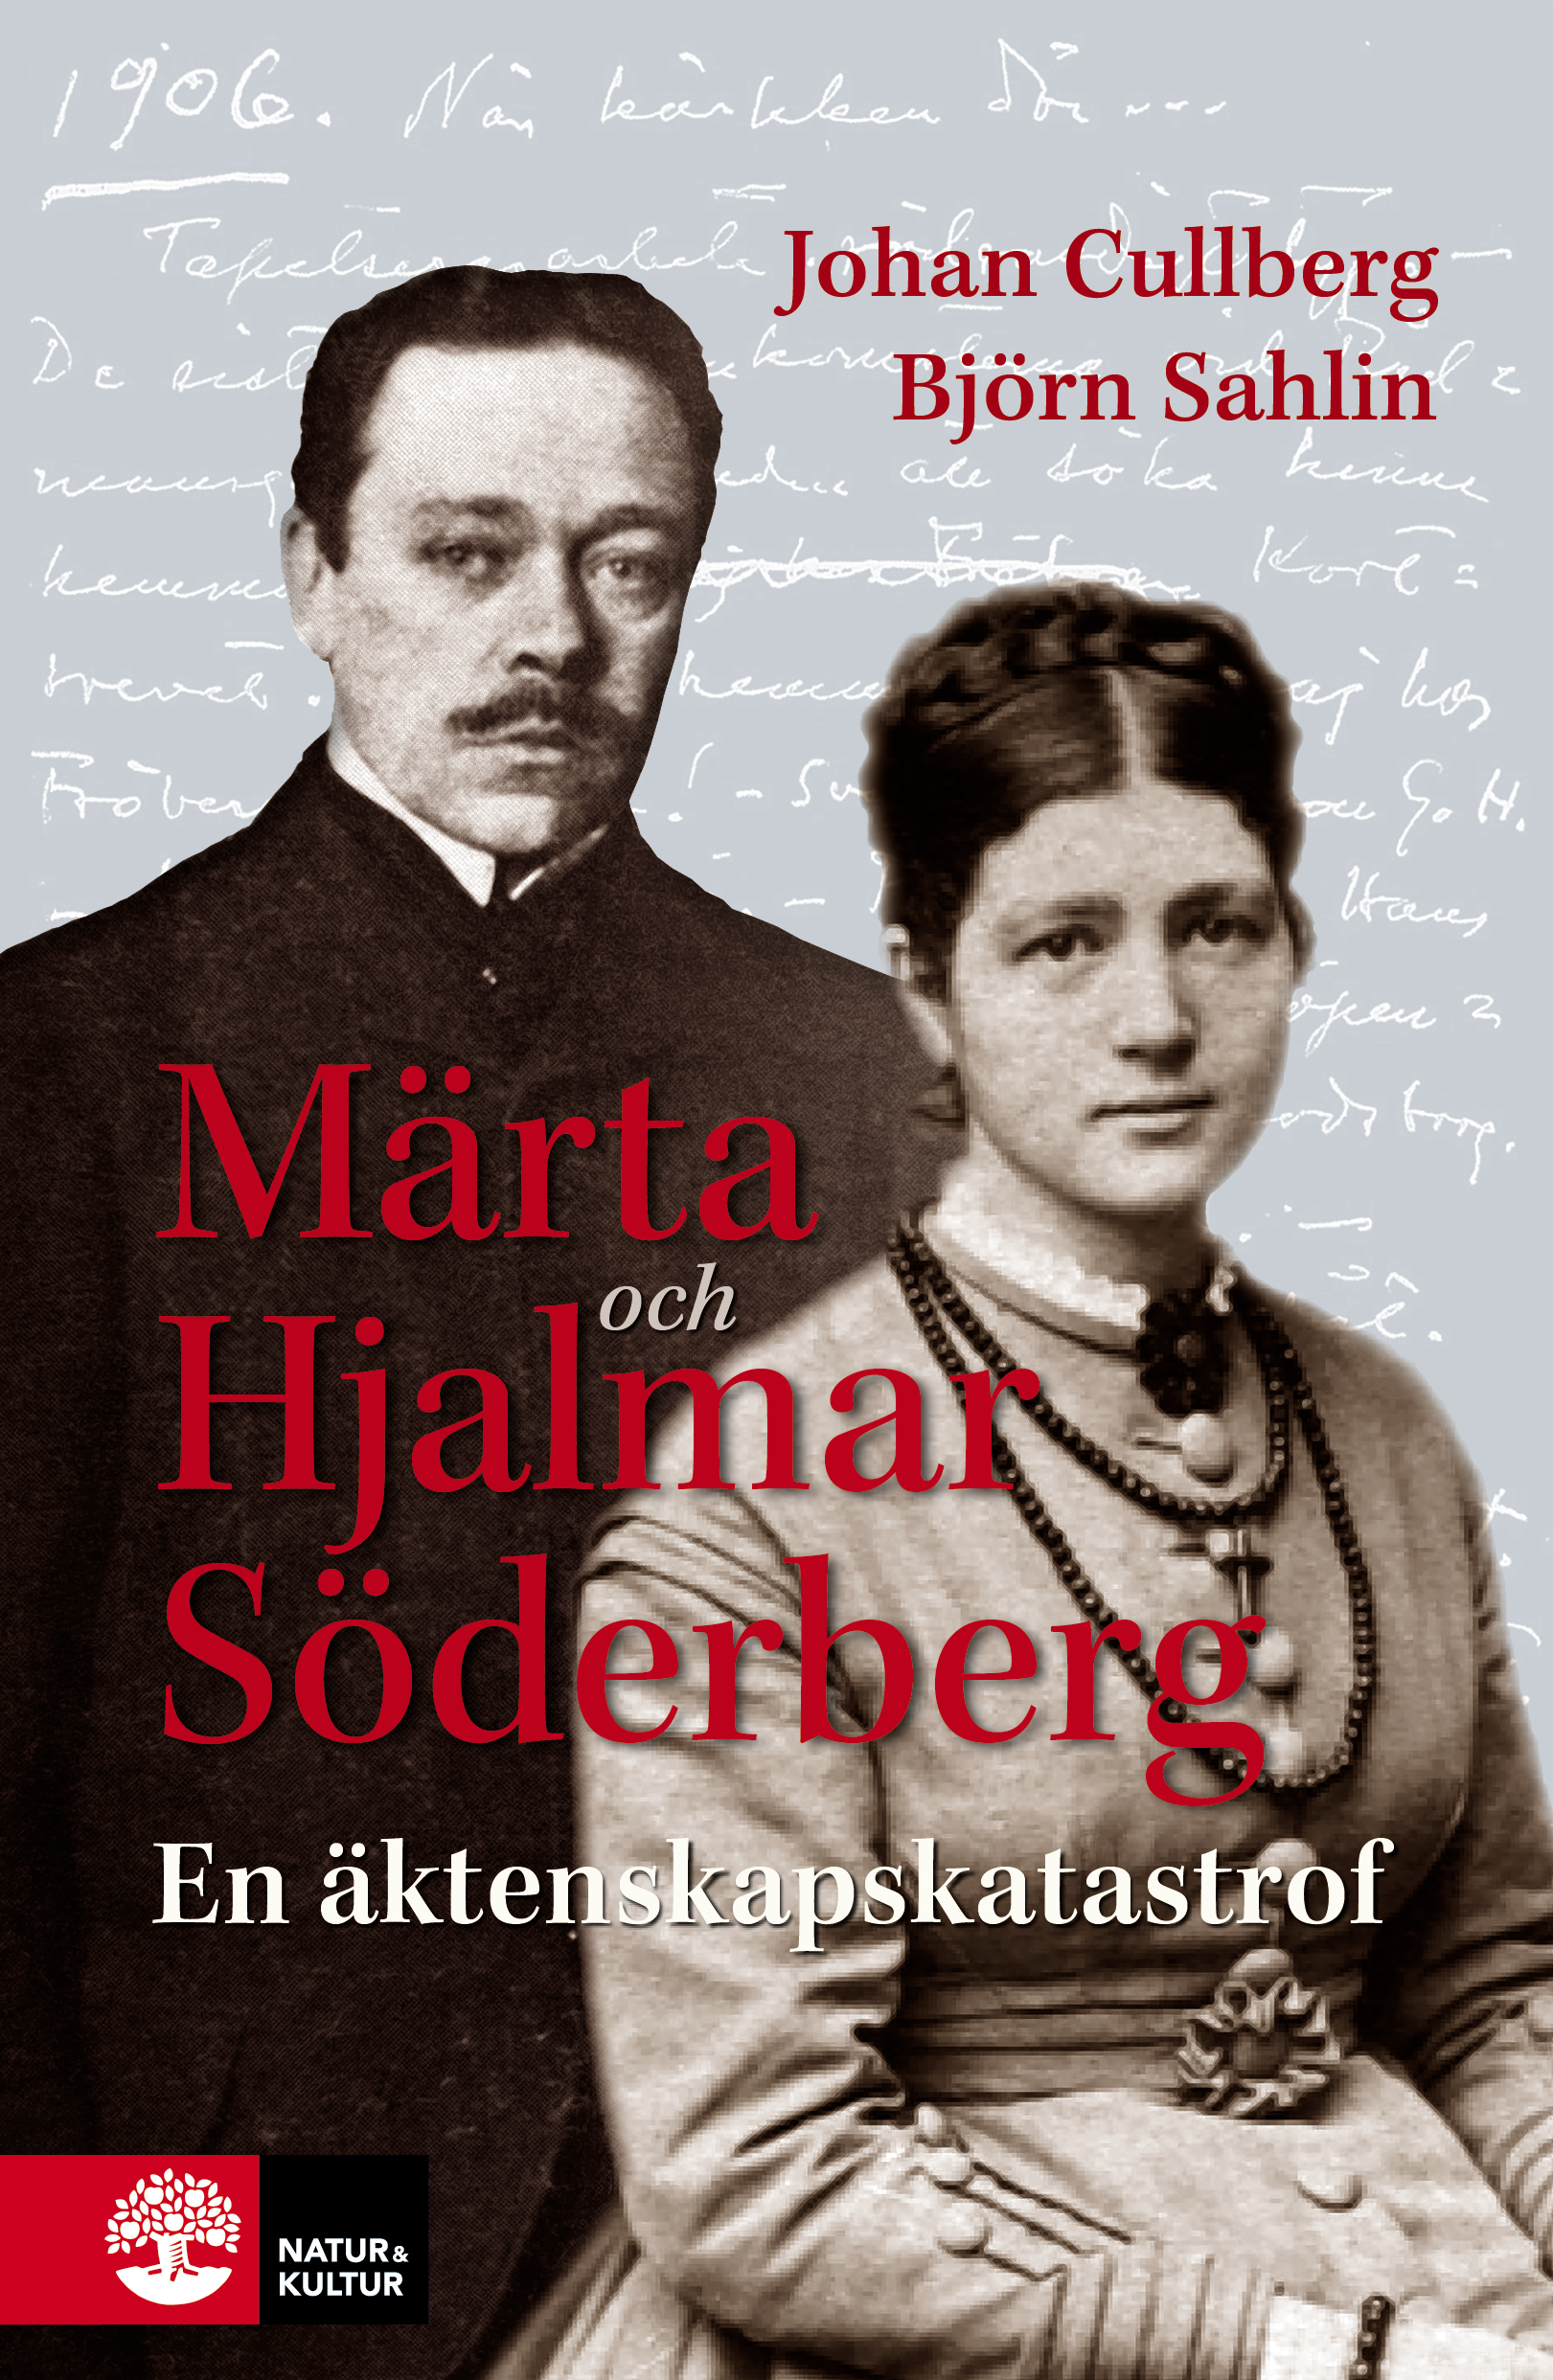 Märta och Hjalmar Söderberg : en äktenskapskatastrof